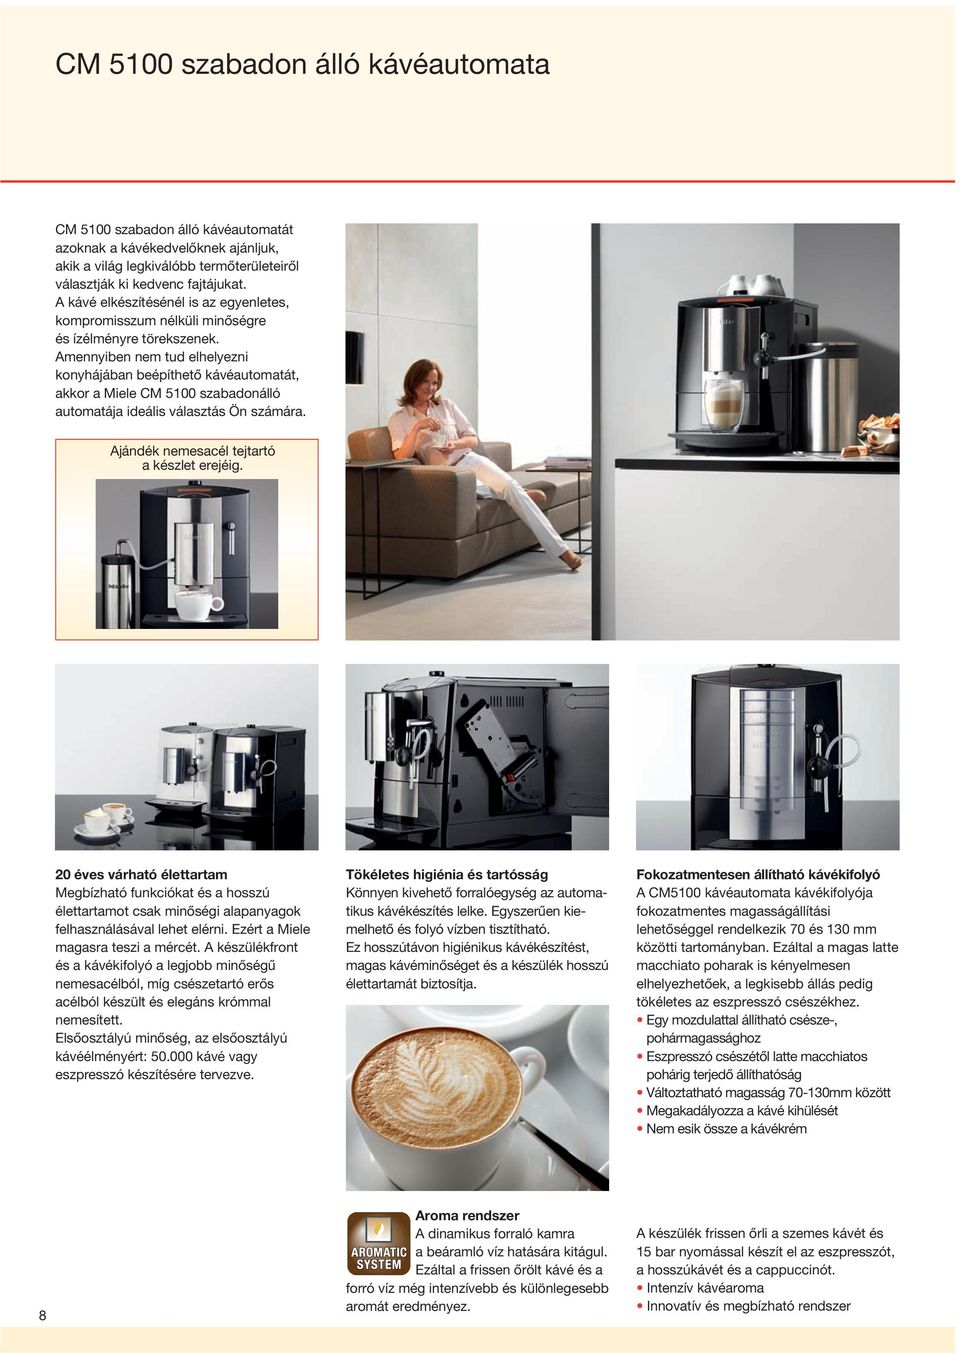 Amennyiben nem tud elhelyezni konyhá jában beépíthetô kávéautomatát, akkor a Miele CM 5100 szabadonálló automatája ideális választás Ön számára. Ajándék nemesacél tejtartó a készlet erejéig.